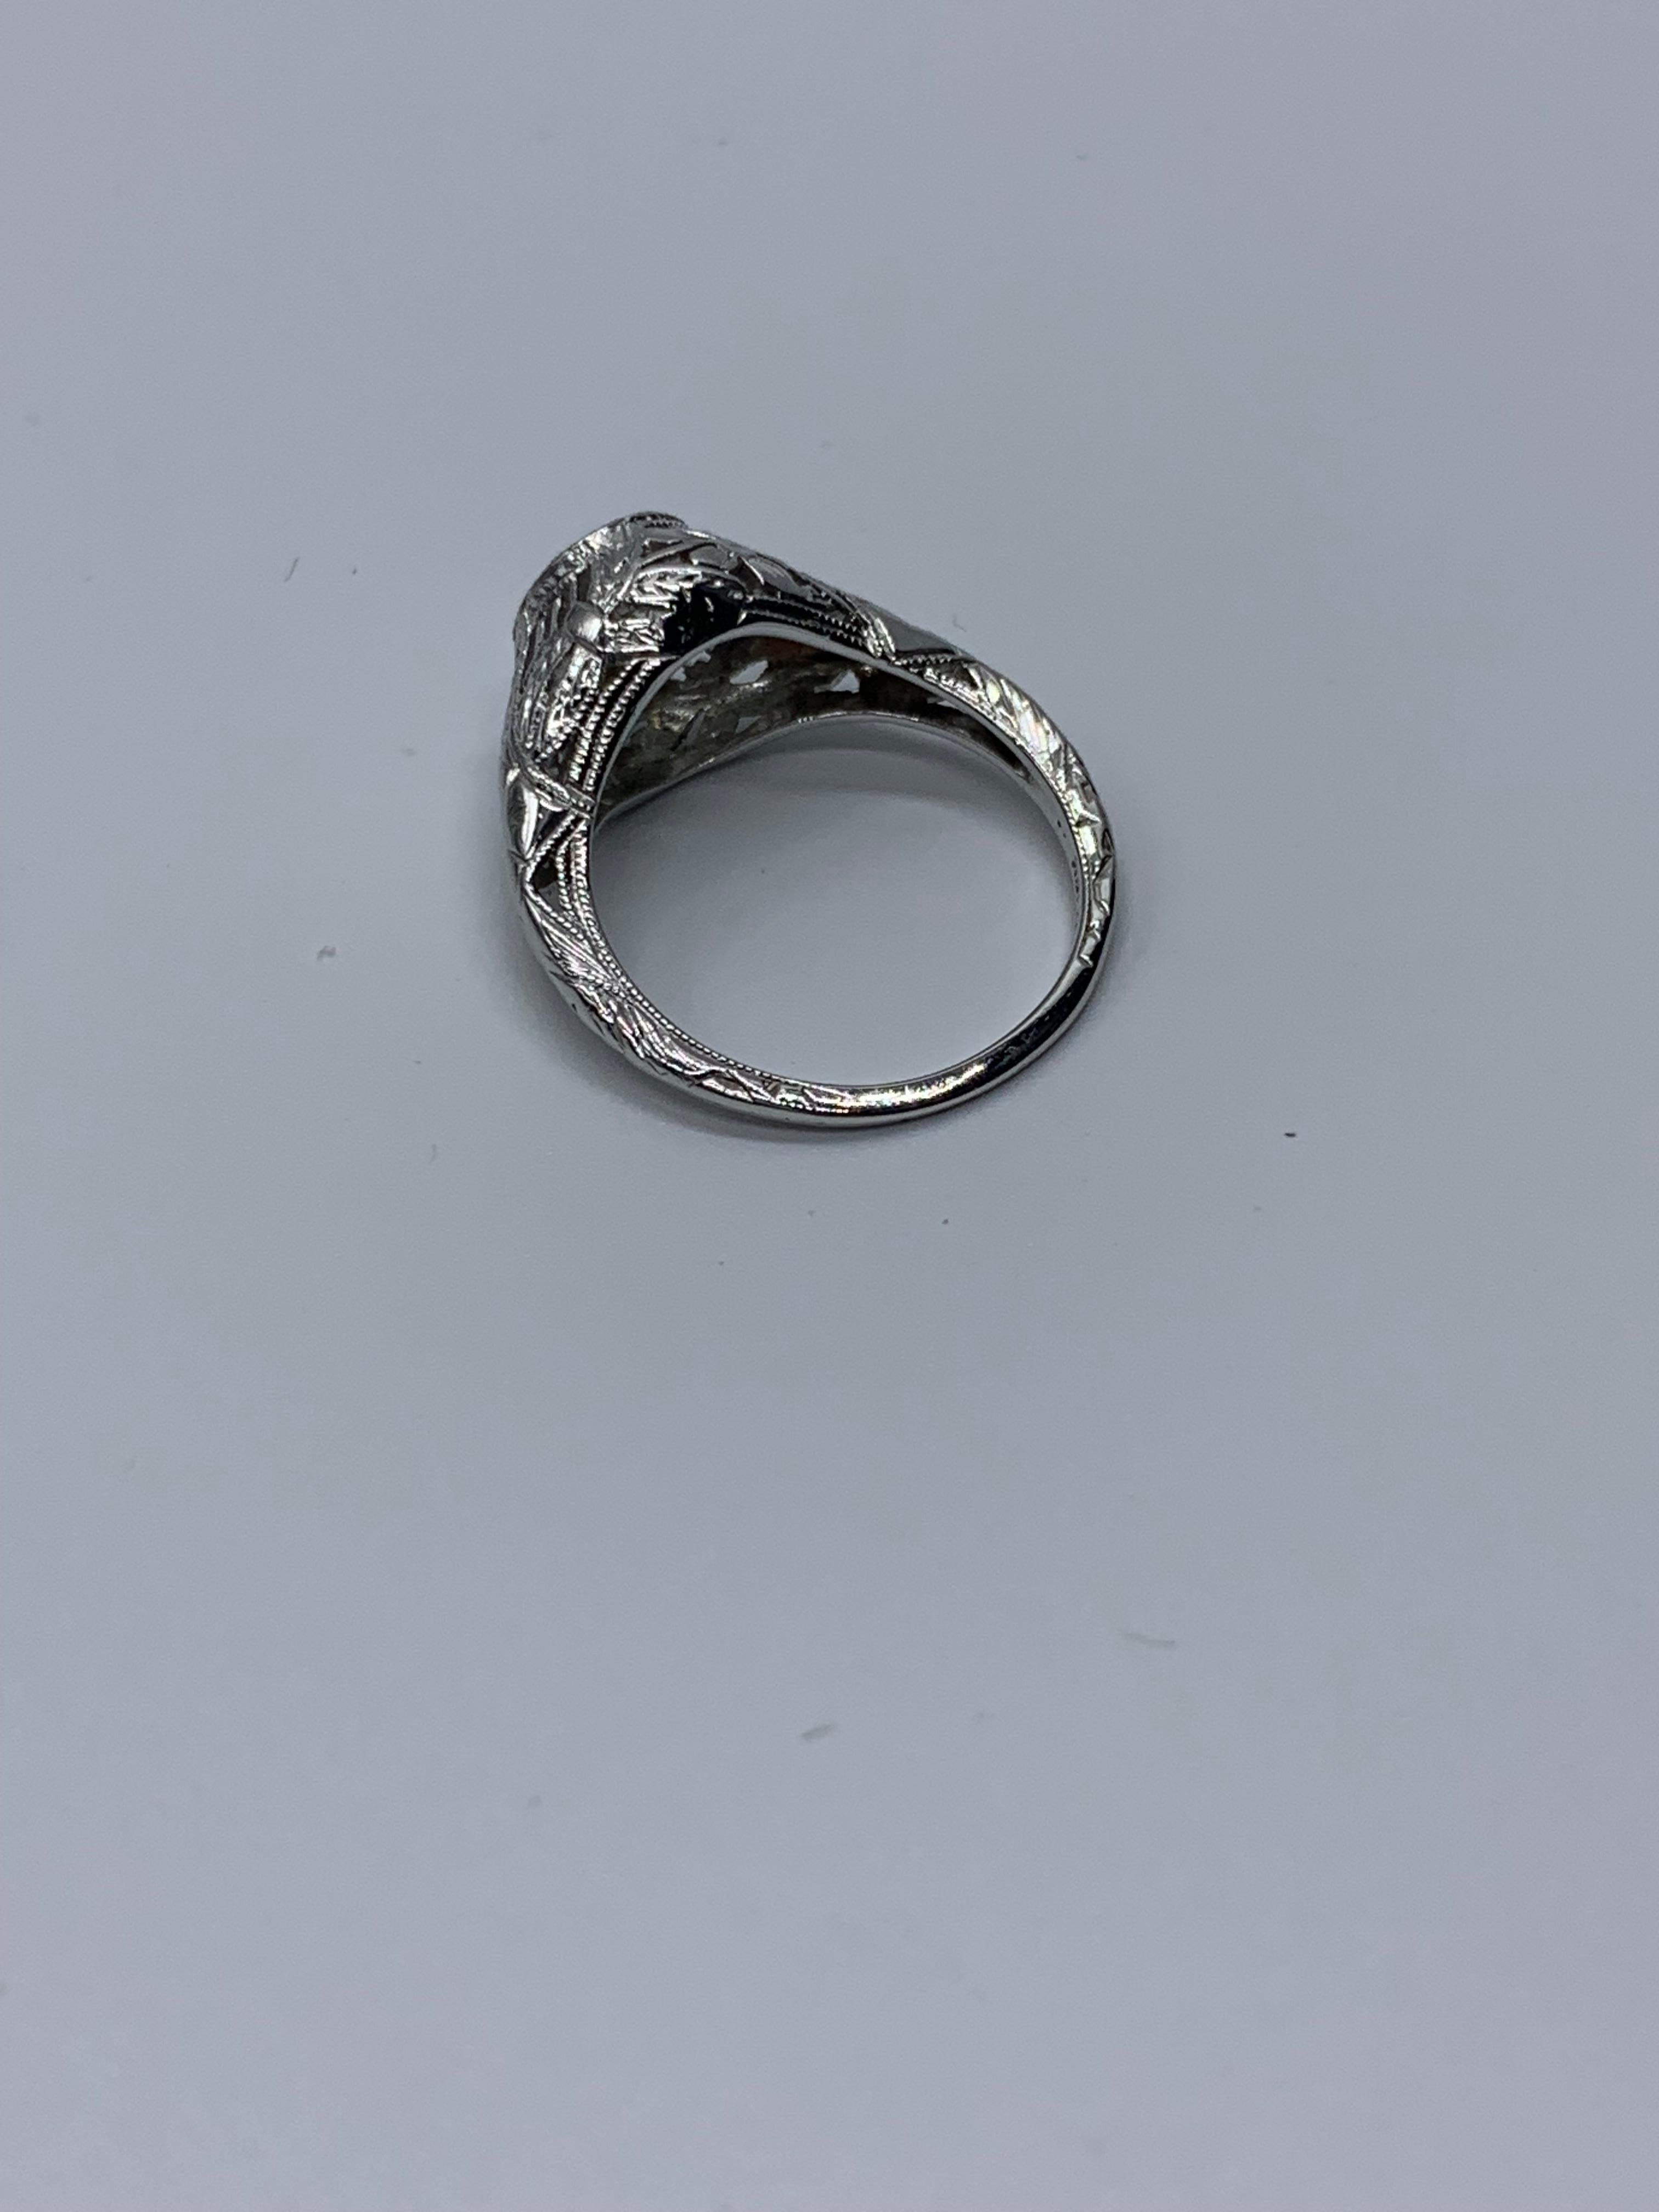 1.01 Carat Diamond Ring In Fair Condition For Sale In Miami Beach, FL